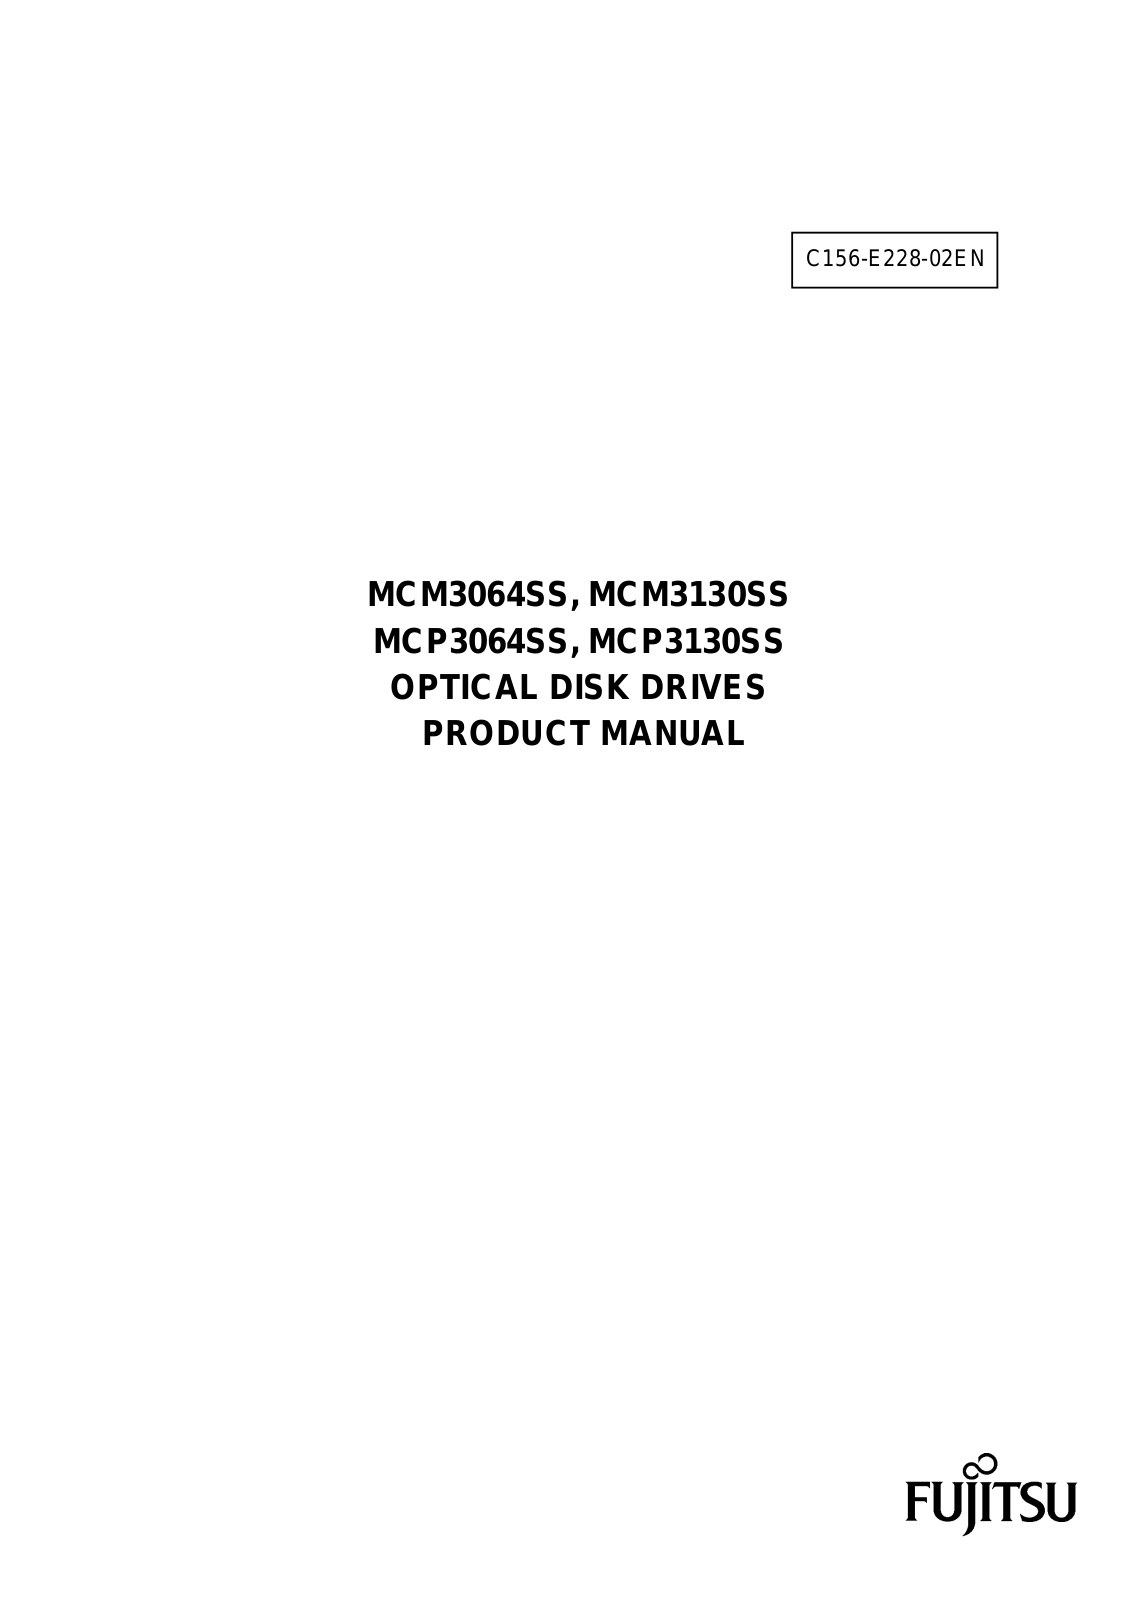 Fujitsu MCP3130SS, MCM3130SS, MCP3064SS, MCM3064SS User Manual